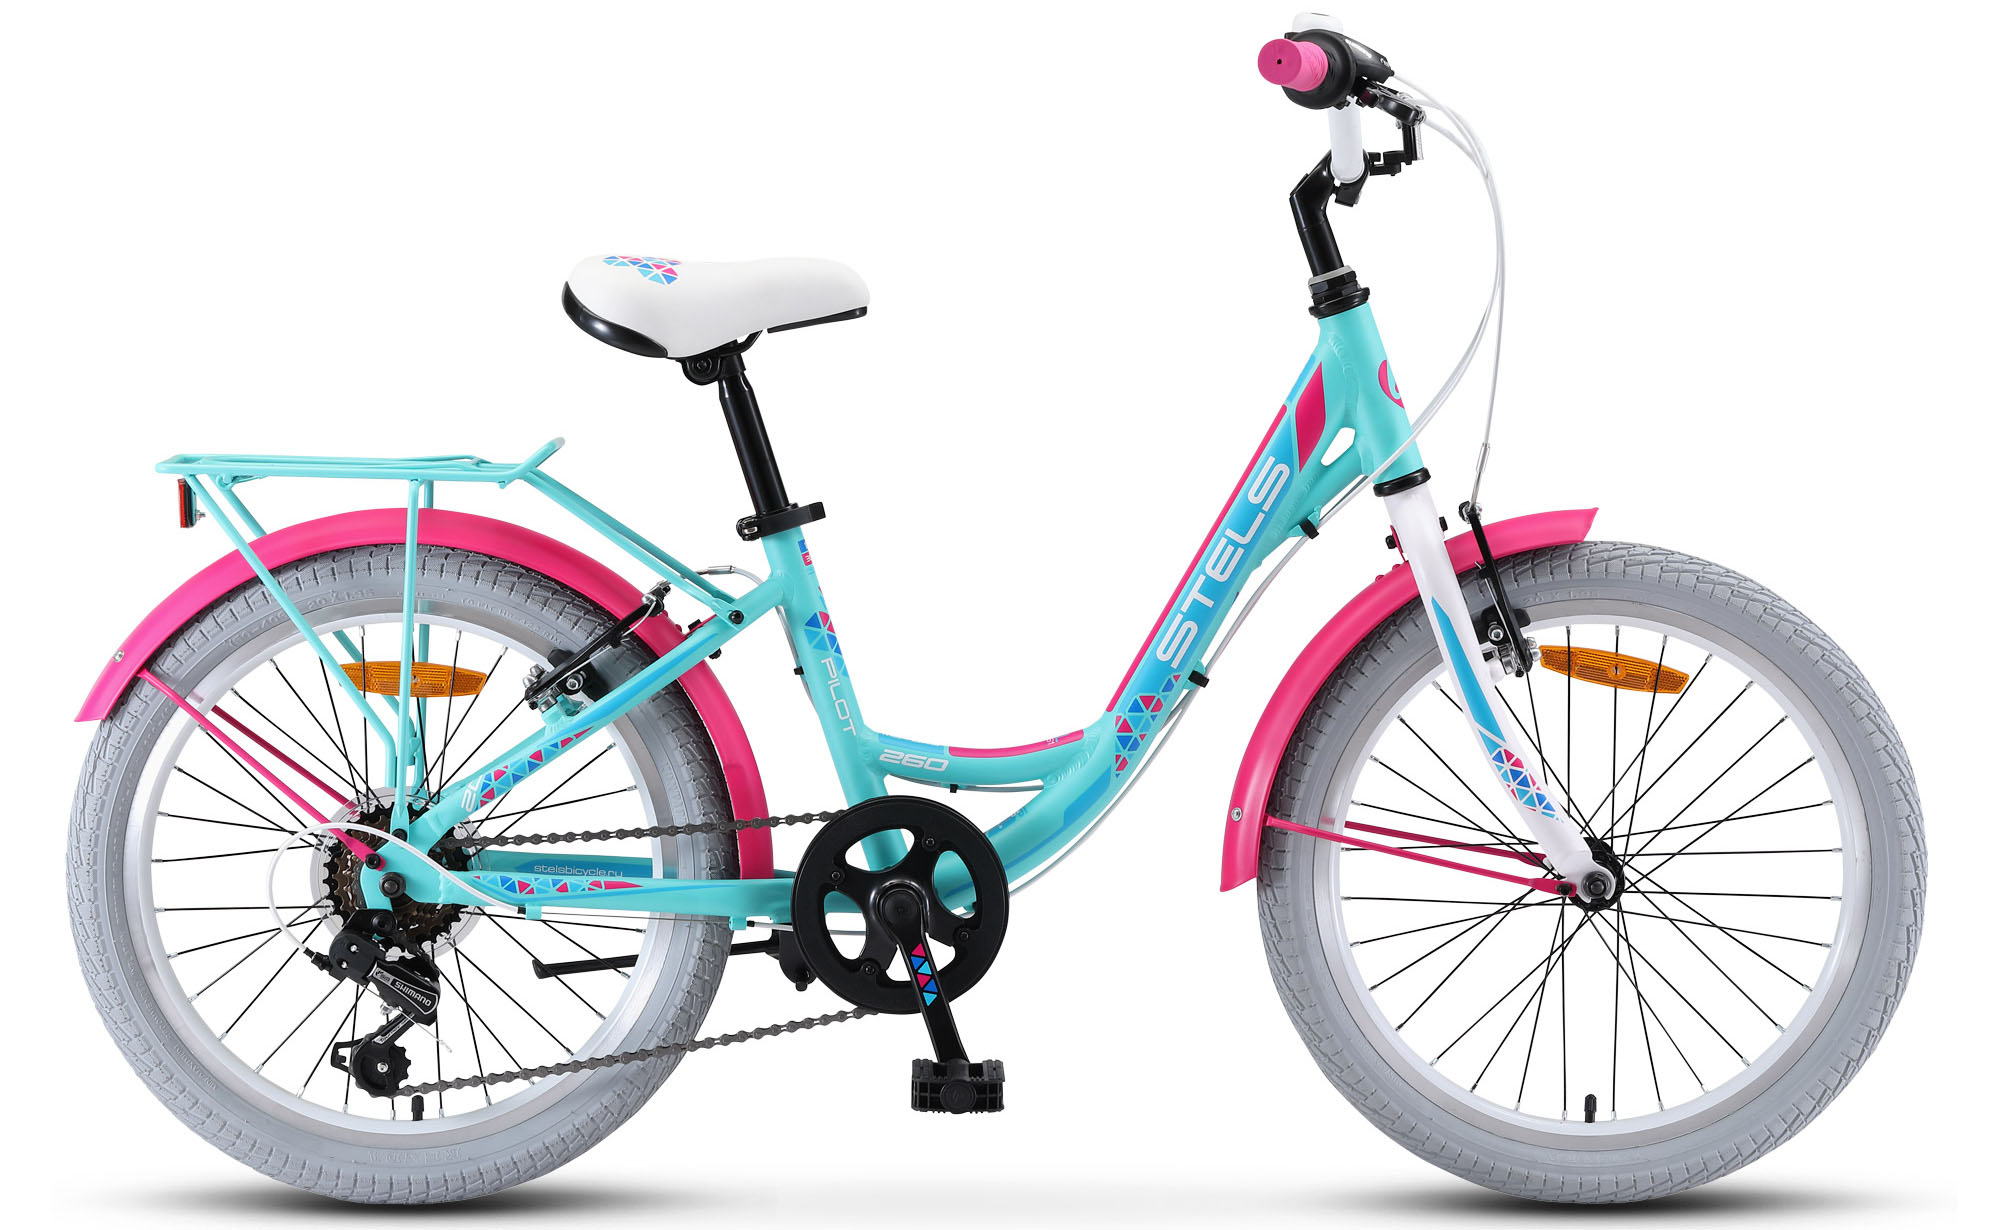  Велосипед трехколесный детский велосипед Stels Pilot 260 Lady 20 V010 2019